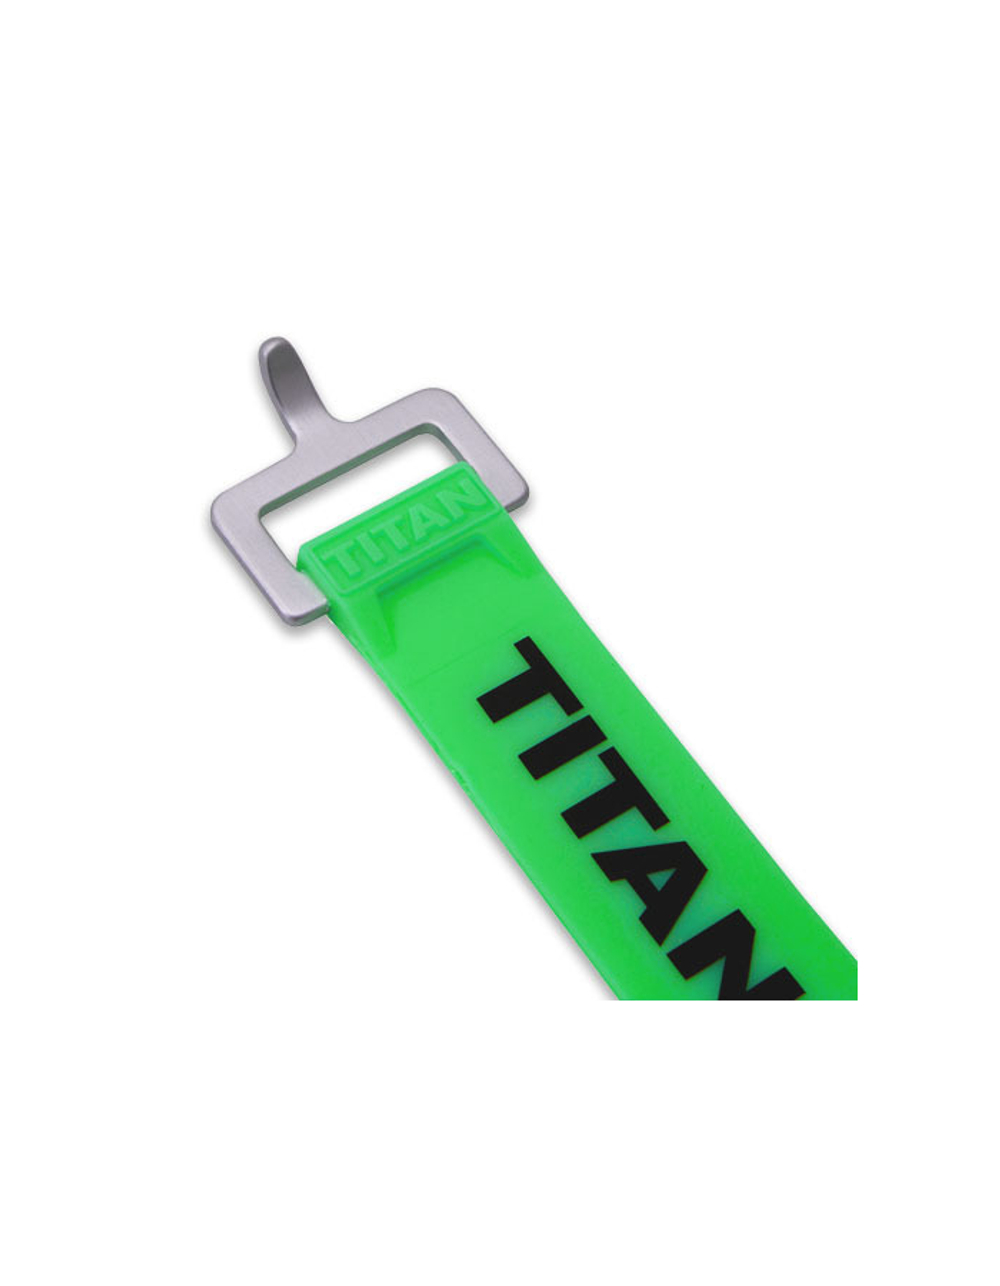 Ремень крепёжный TitanStraps Industrial зеленый L = 91 см (Dmax = 27 см, Dmin = 5,5 см)